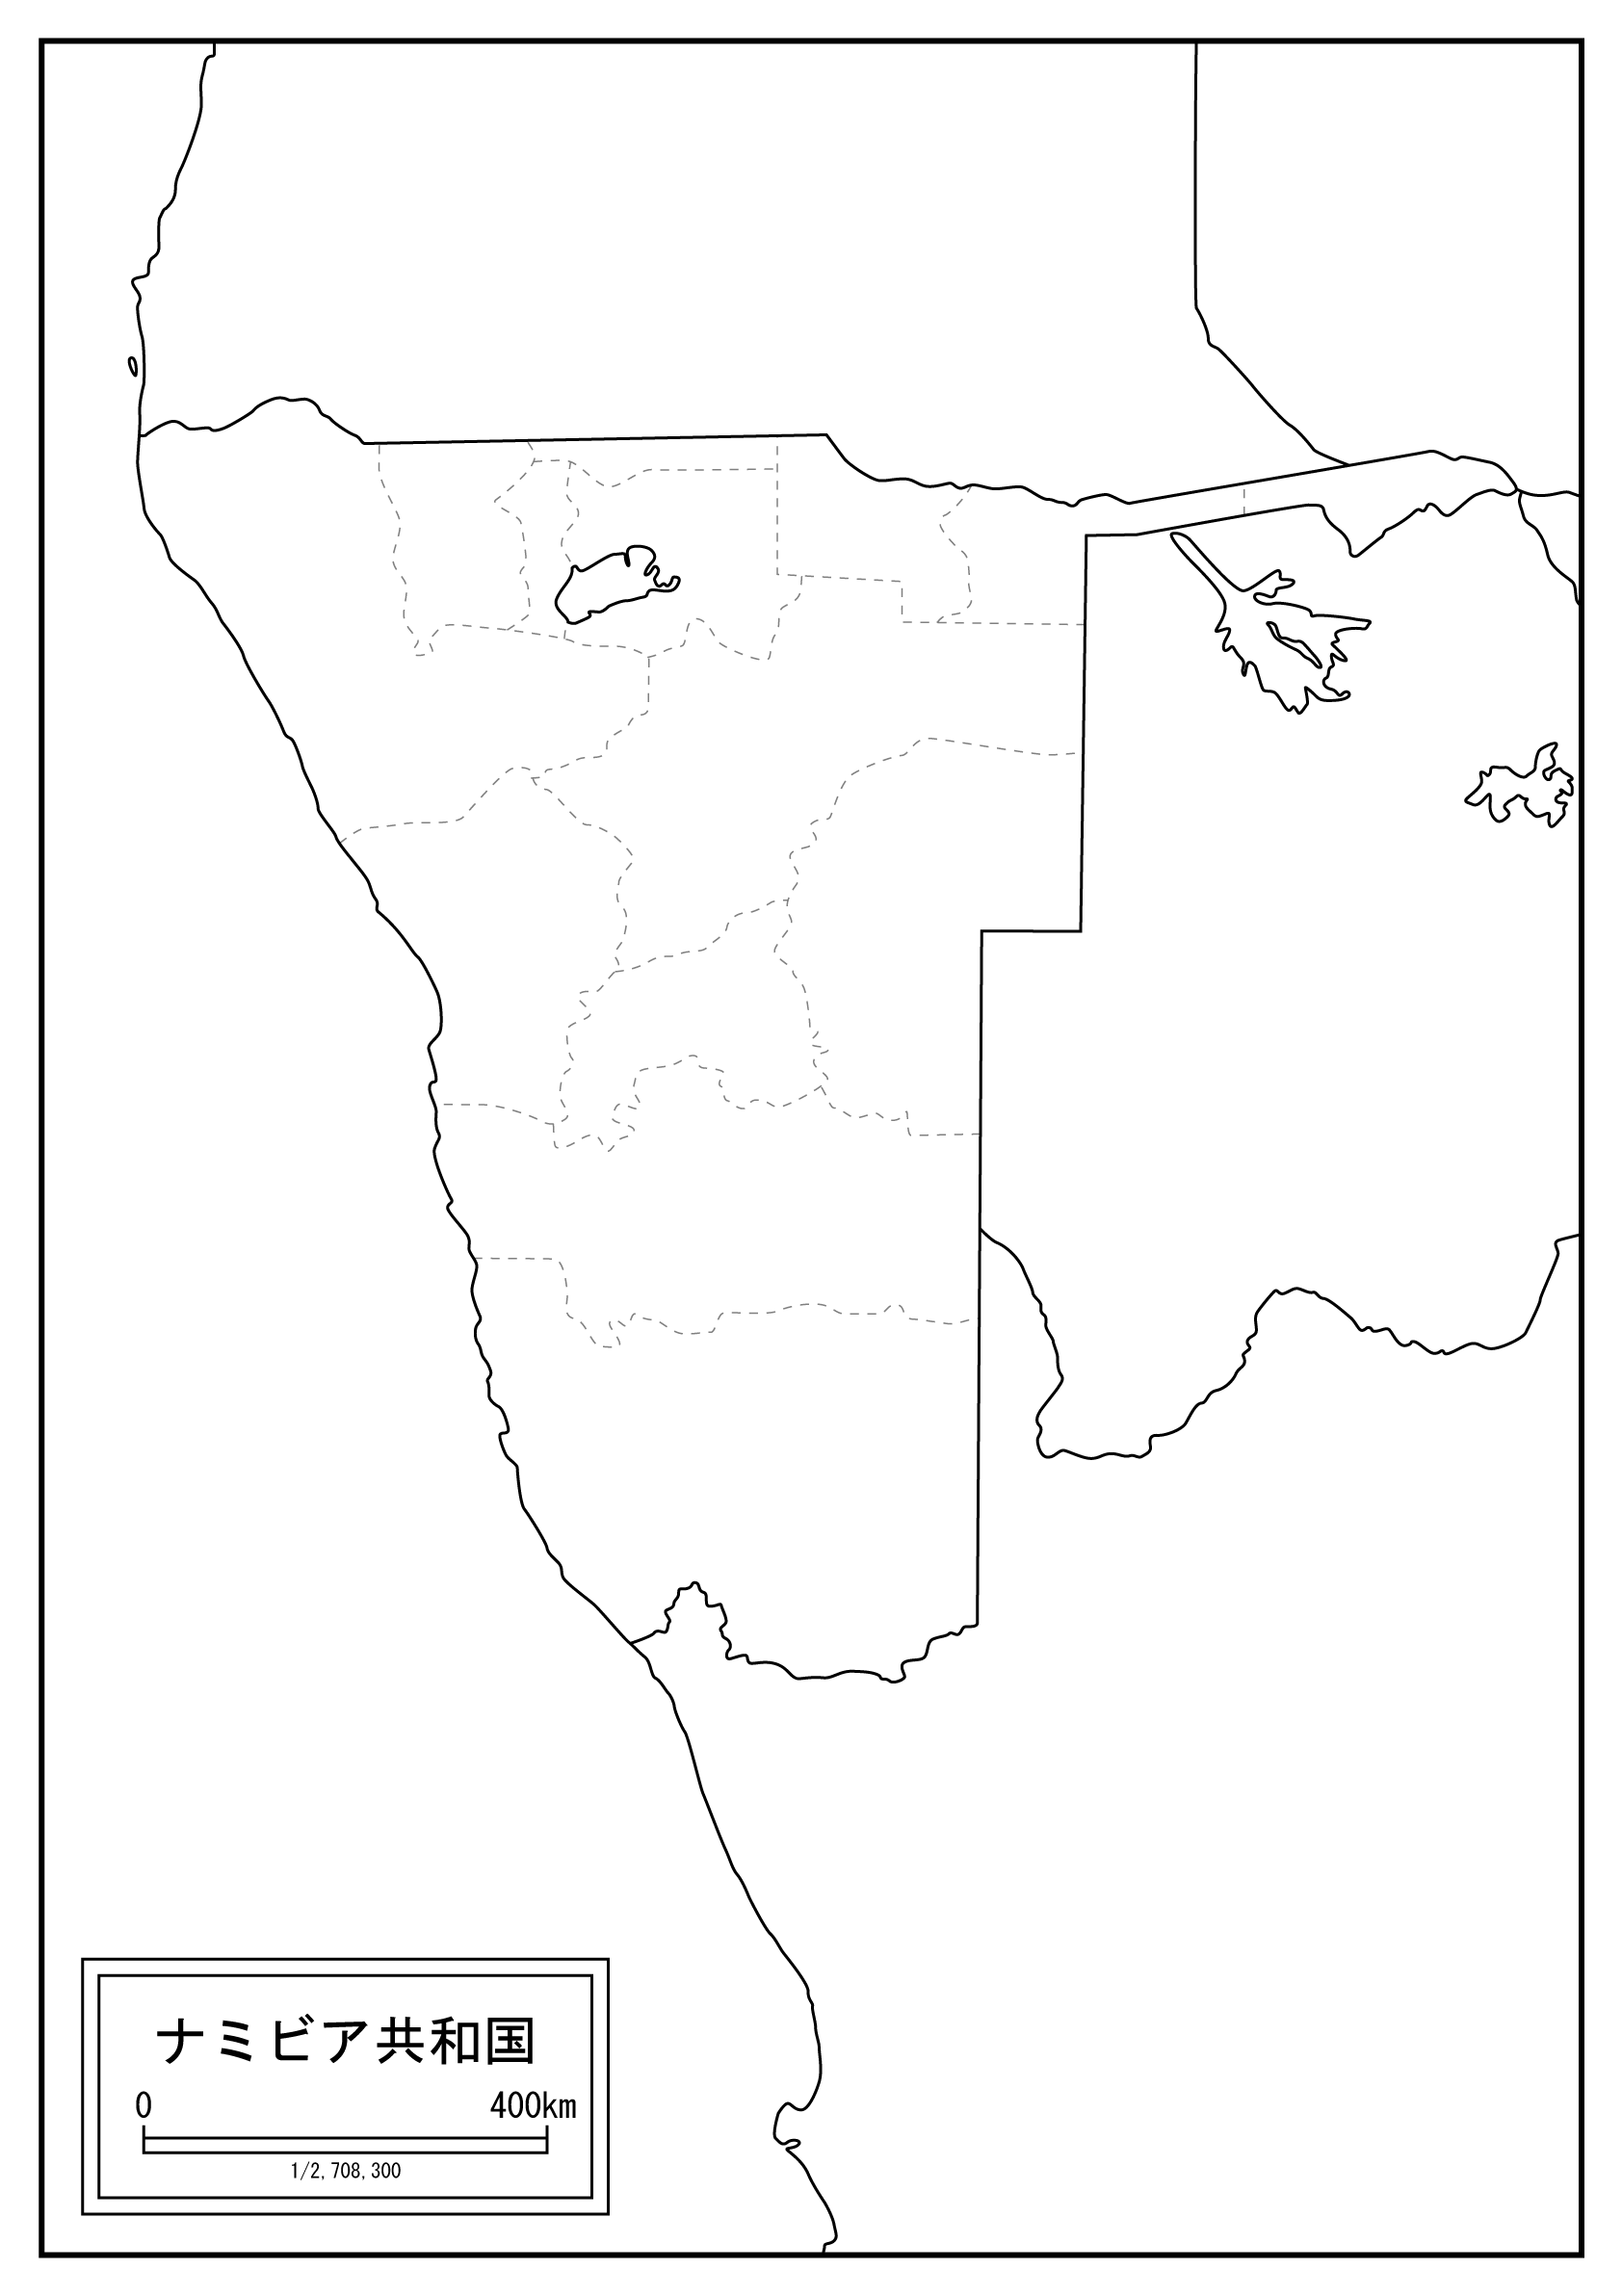 ナミビアのサムネイル